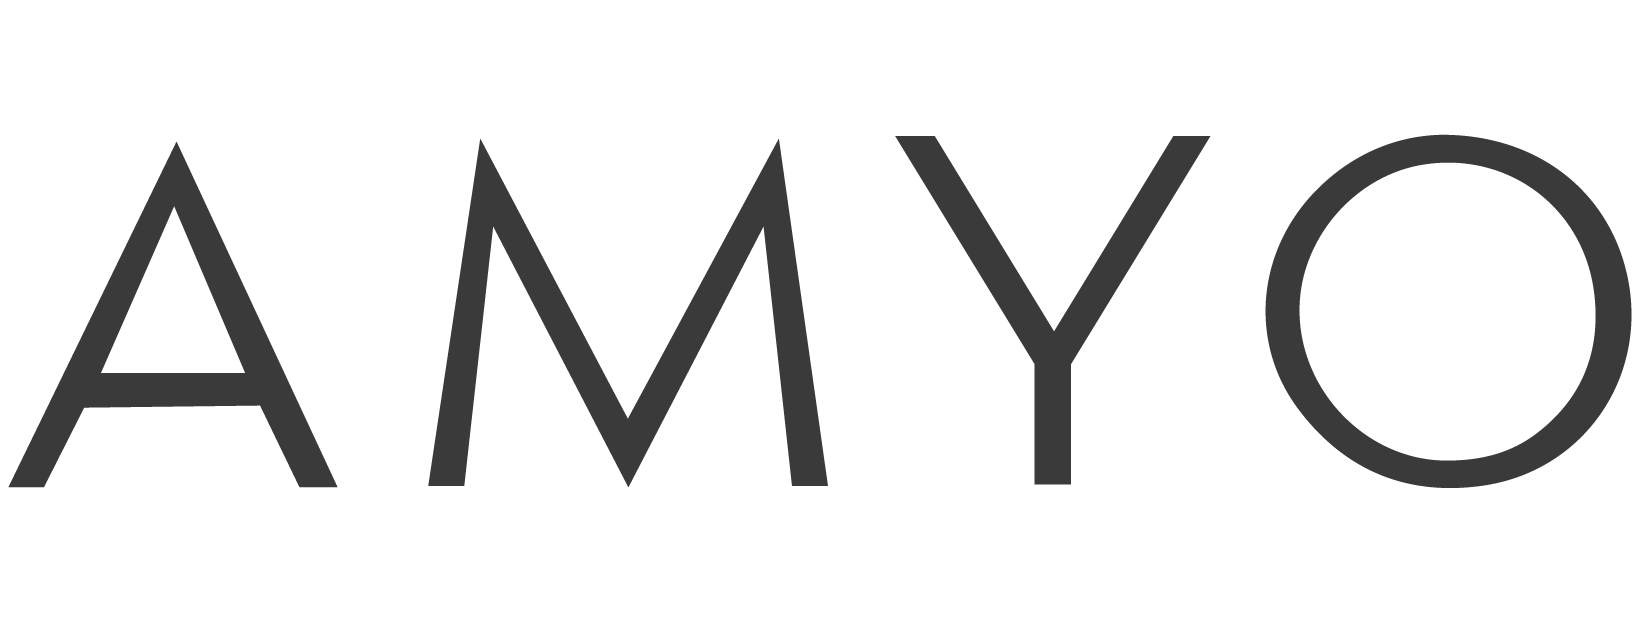 AMYO logo